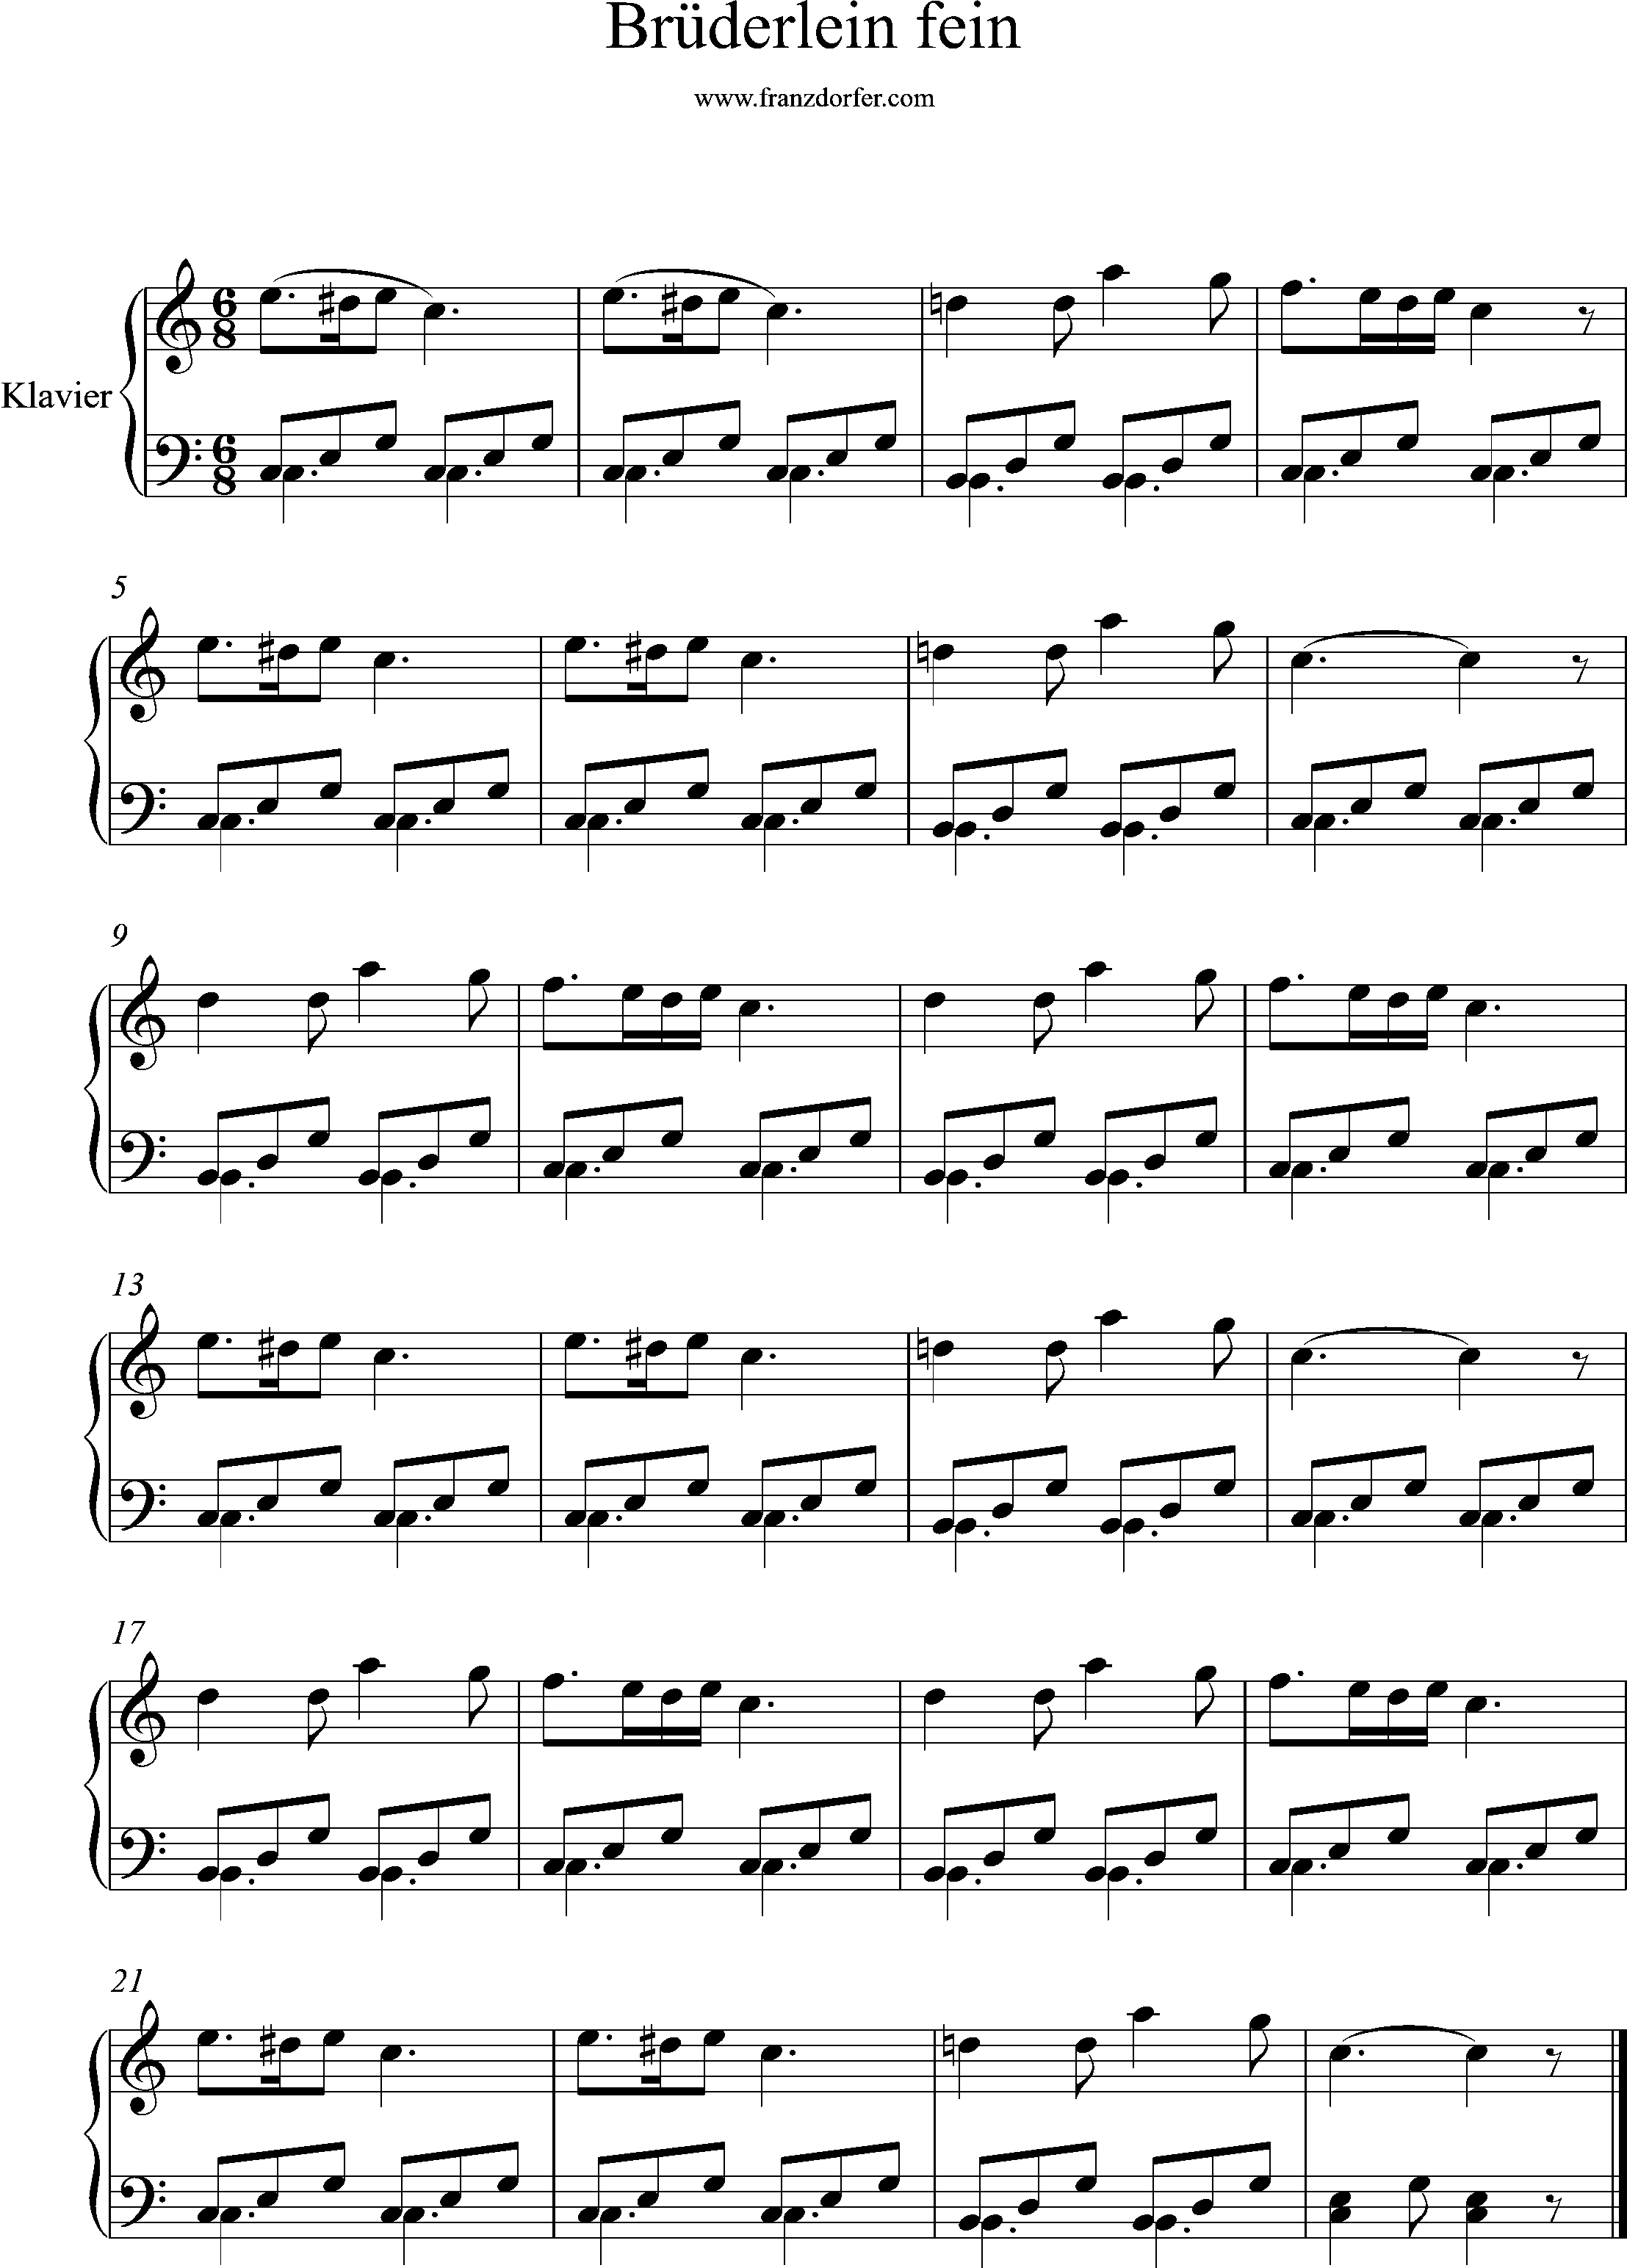 klaviernoten, C-Dur, Brüderlein fein